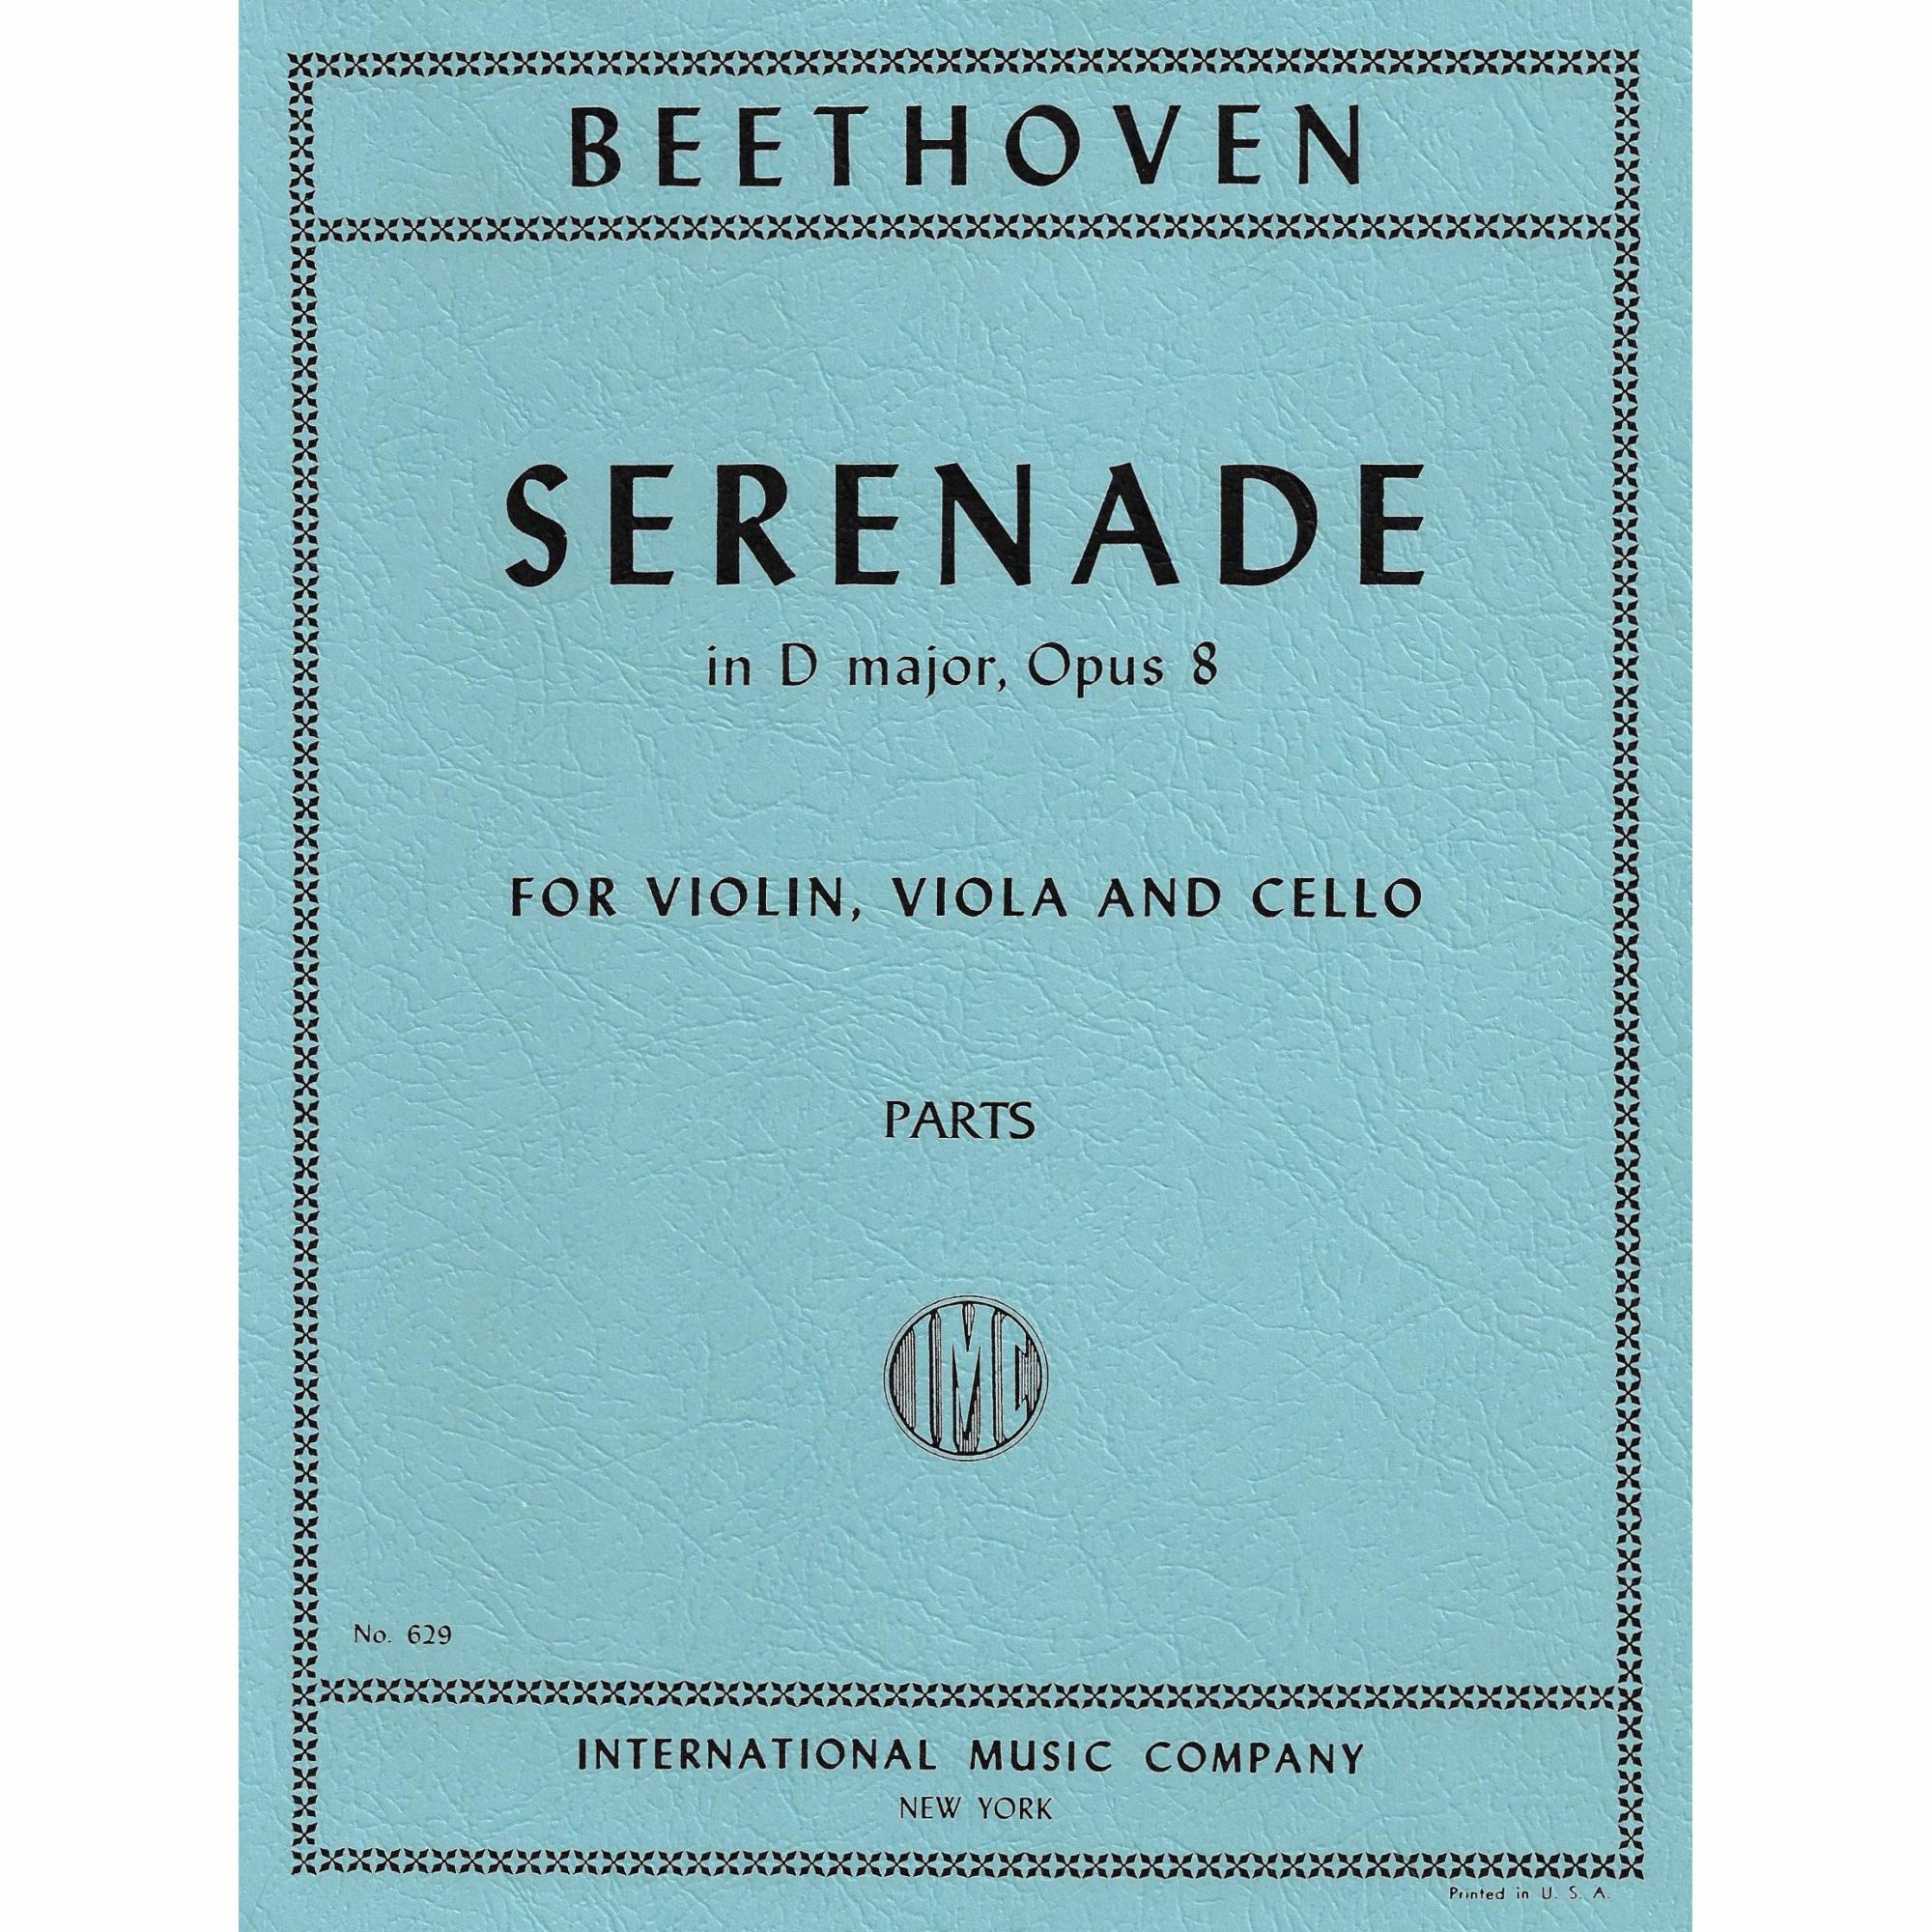 Beethoven -- Serenade in D Major, Op. 8 for Violin, Viola, and Cello